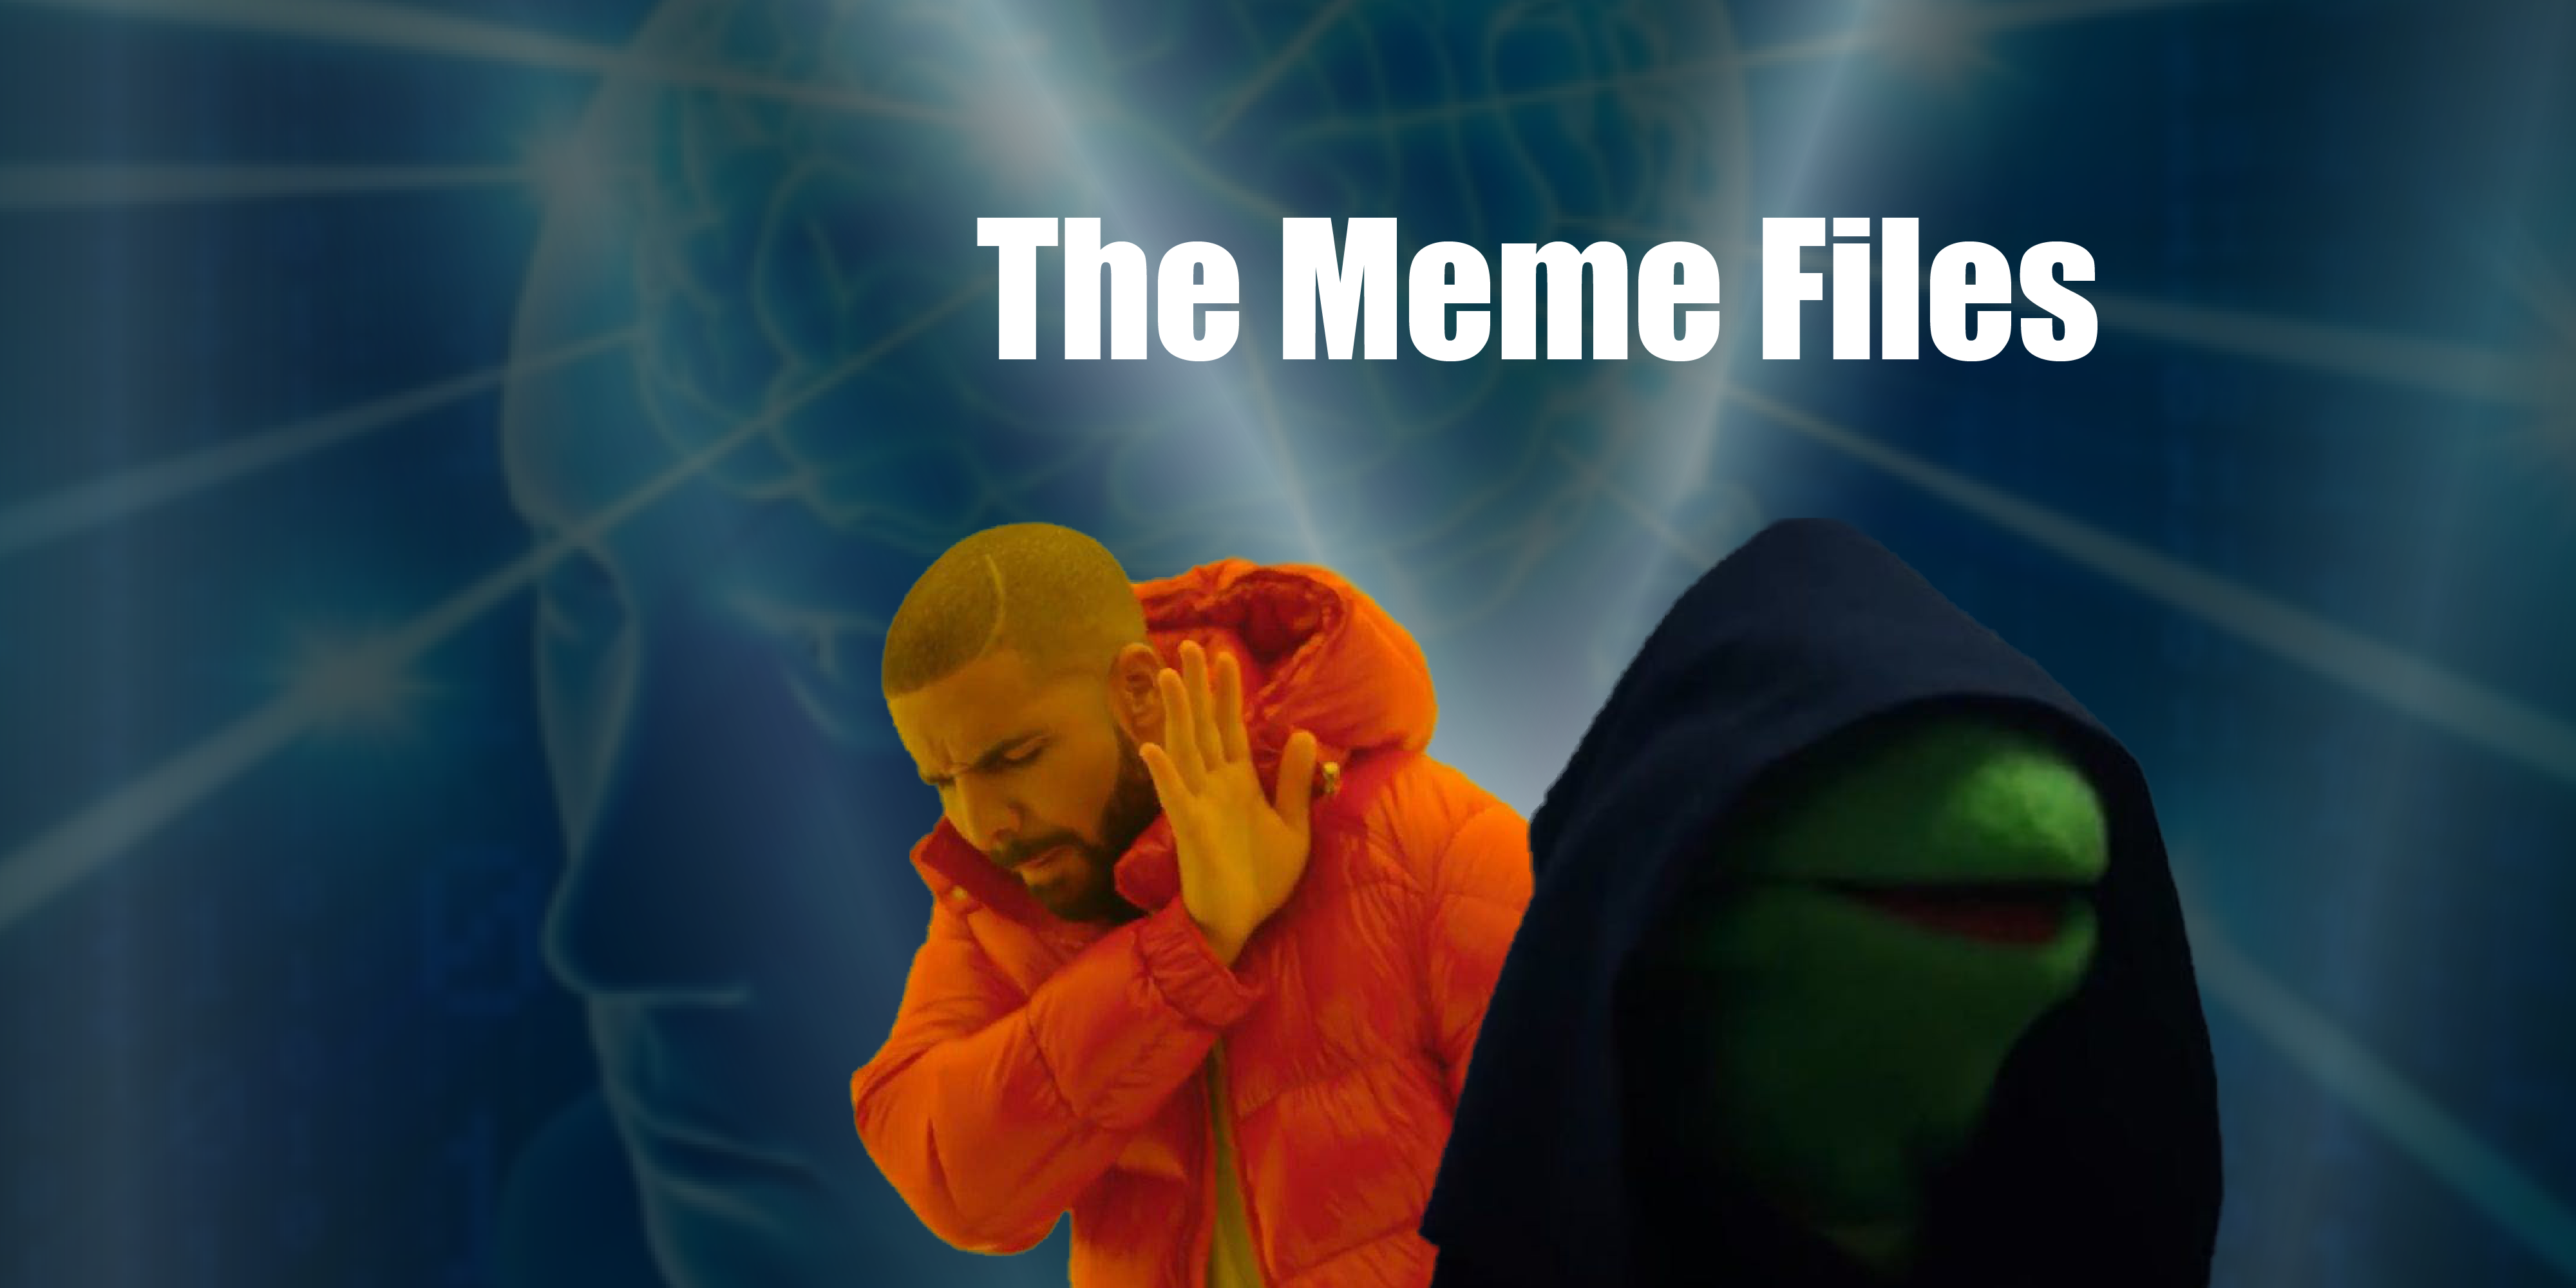 10 New What I Think I Do Meme Generator original 2019